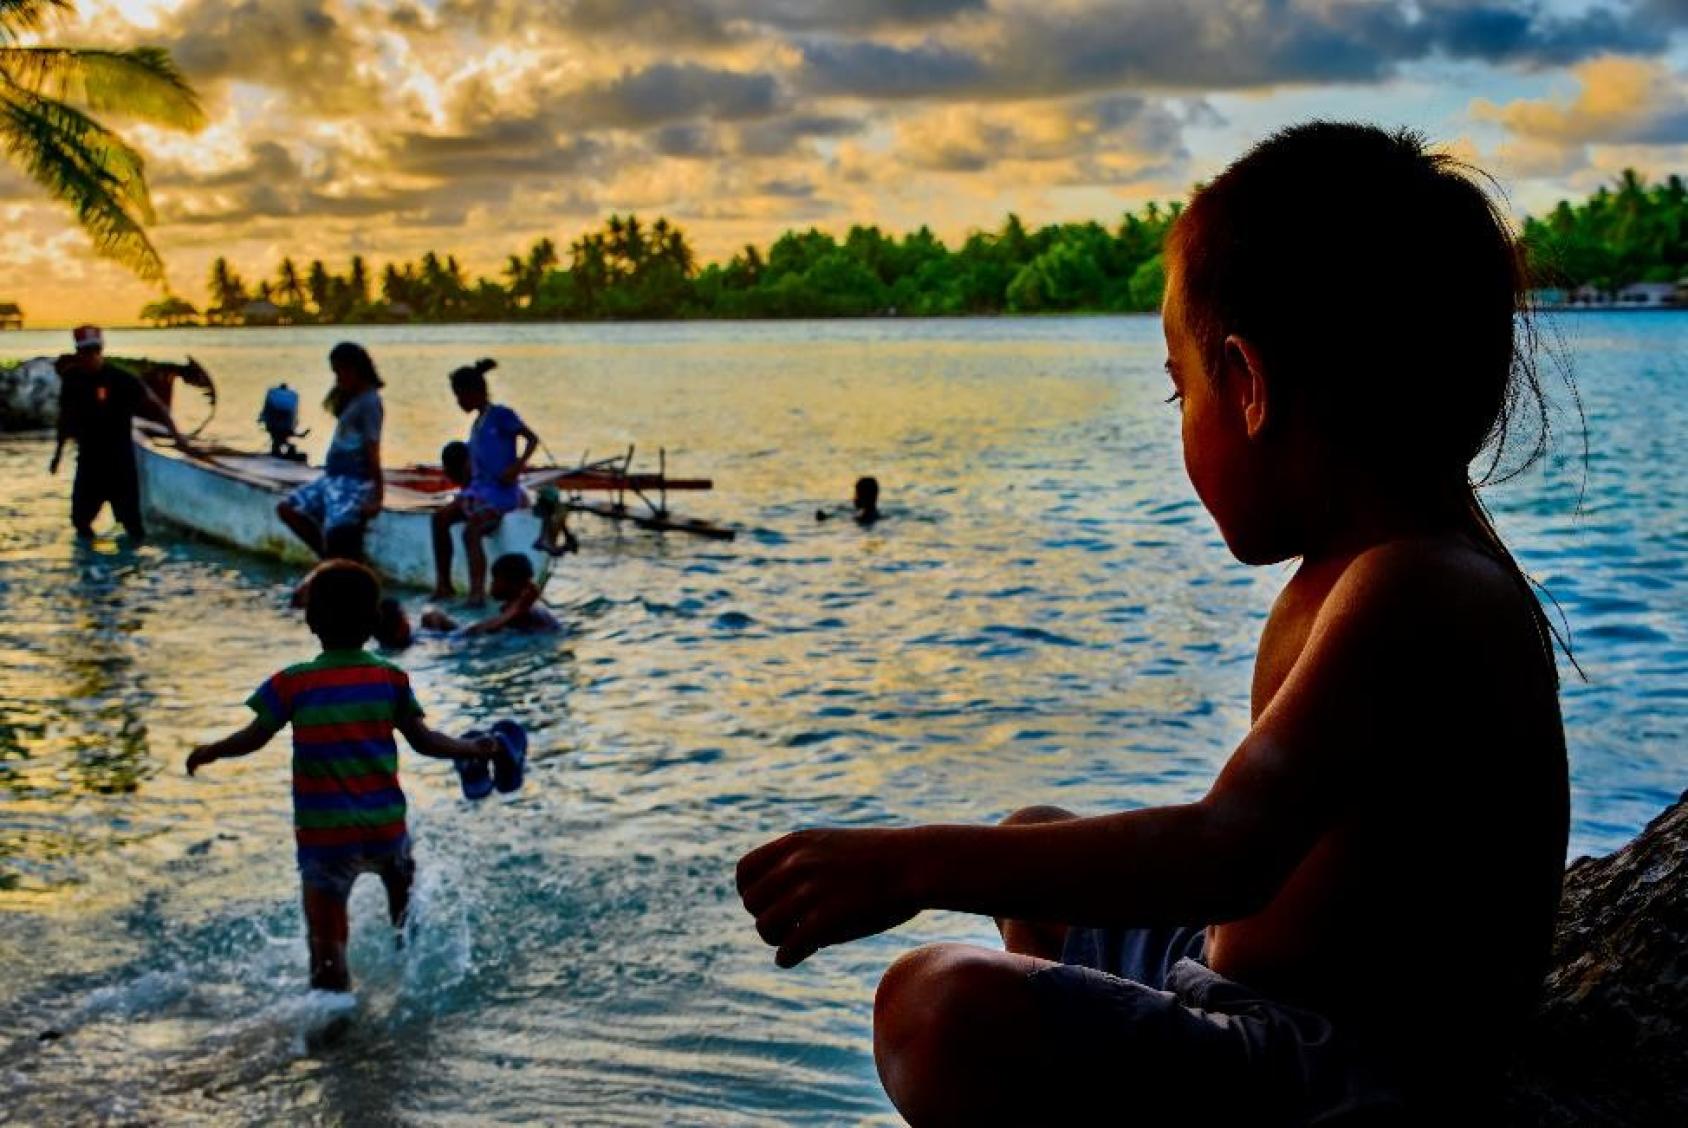 Siluetas de niños y niñas jugando en la orilla de la playa en el atardecer, y un niño mira hacia un barco de pesca.